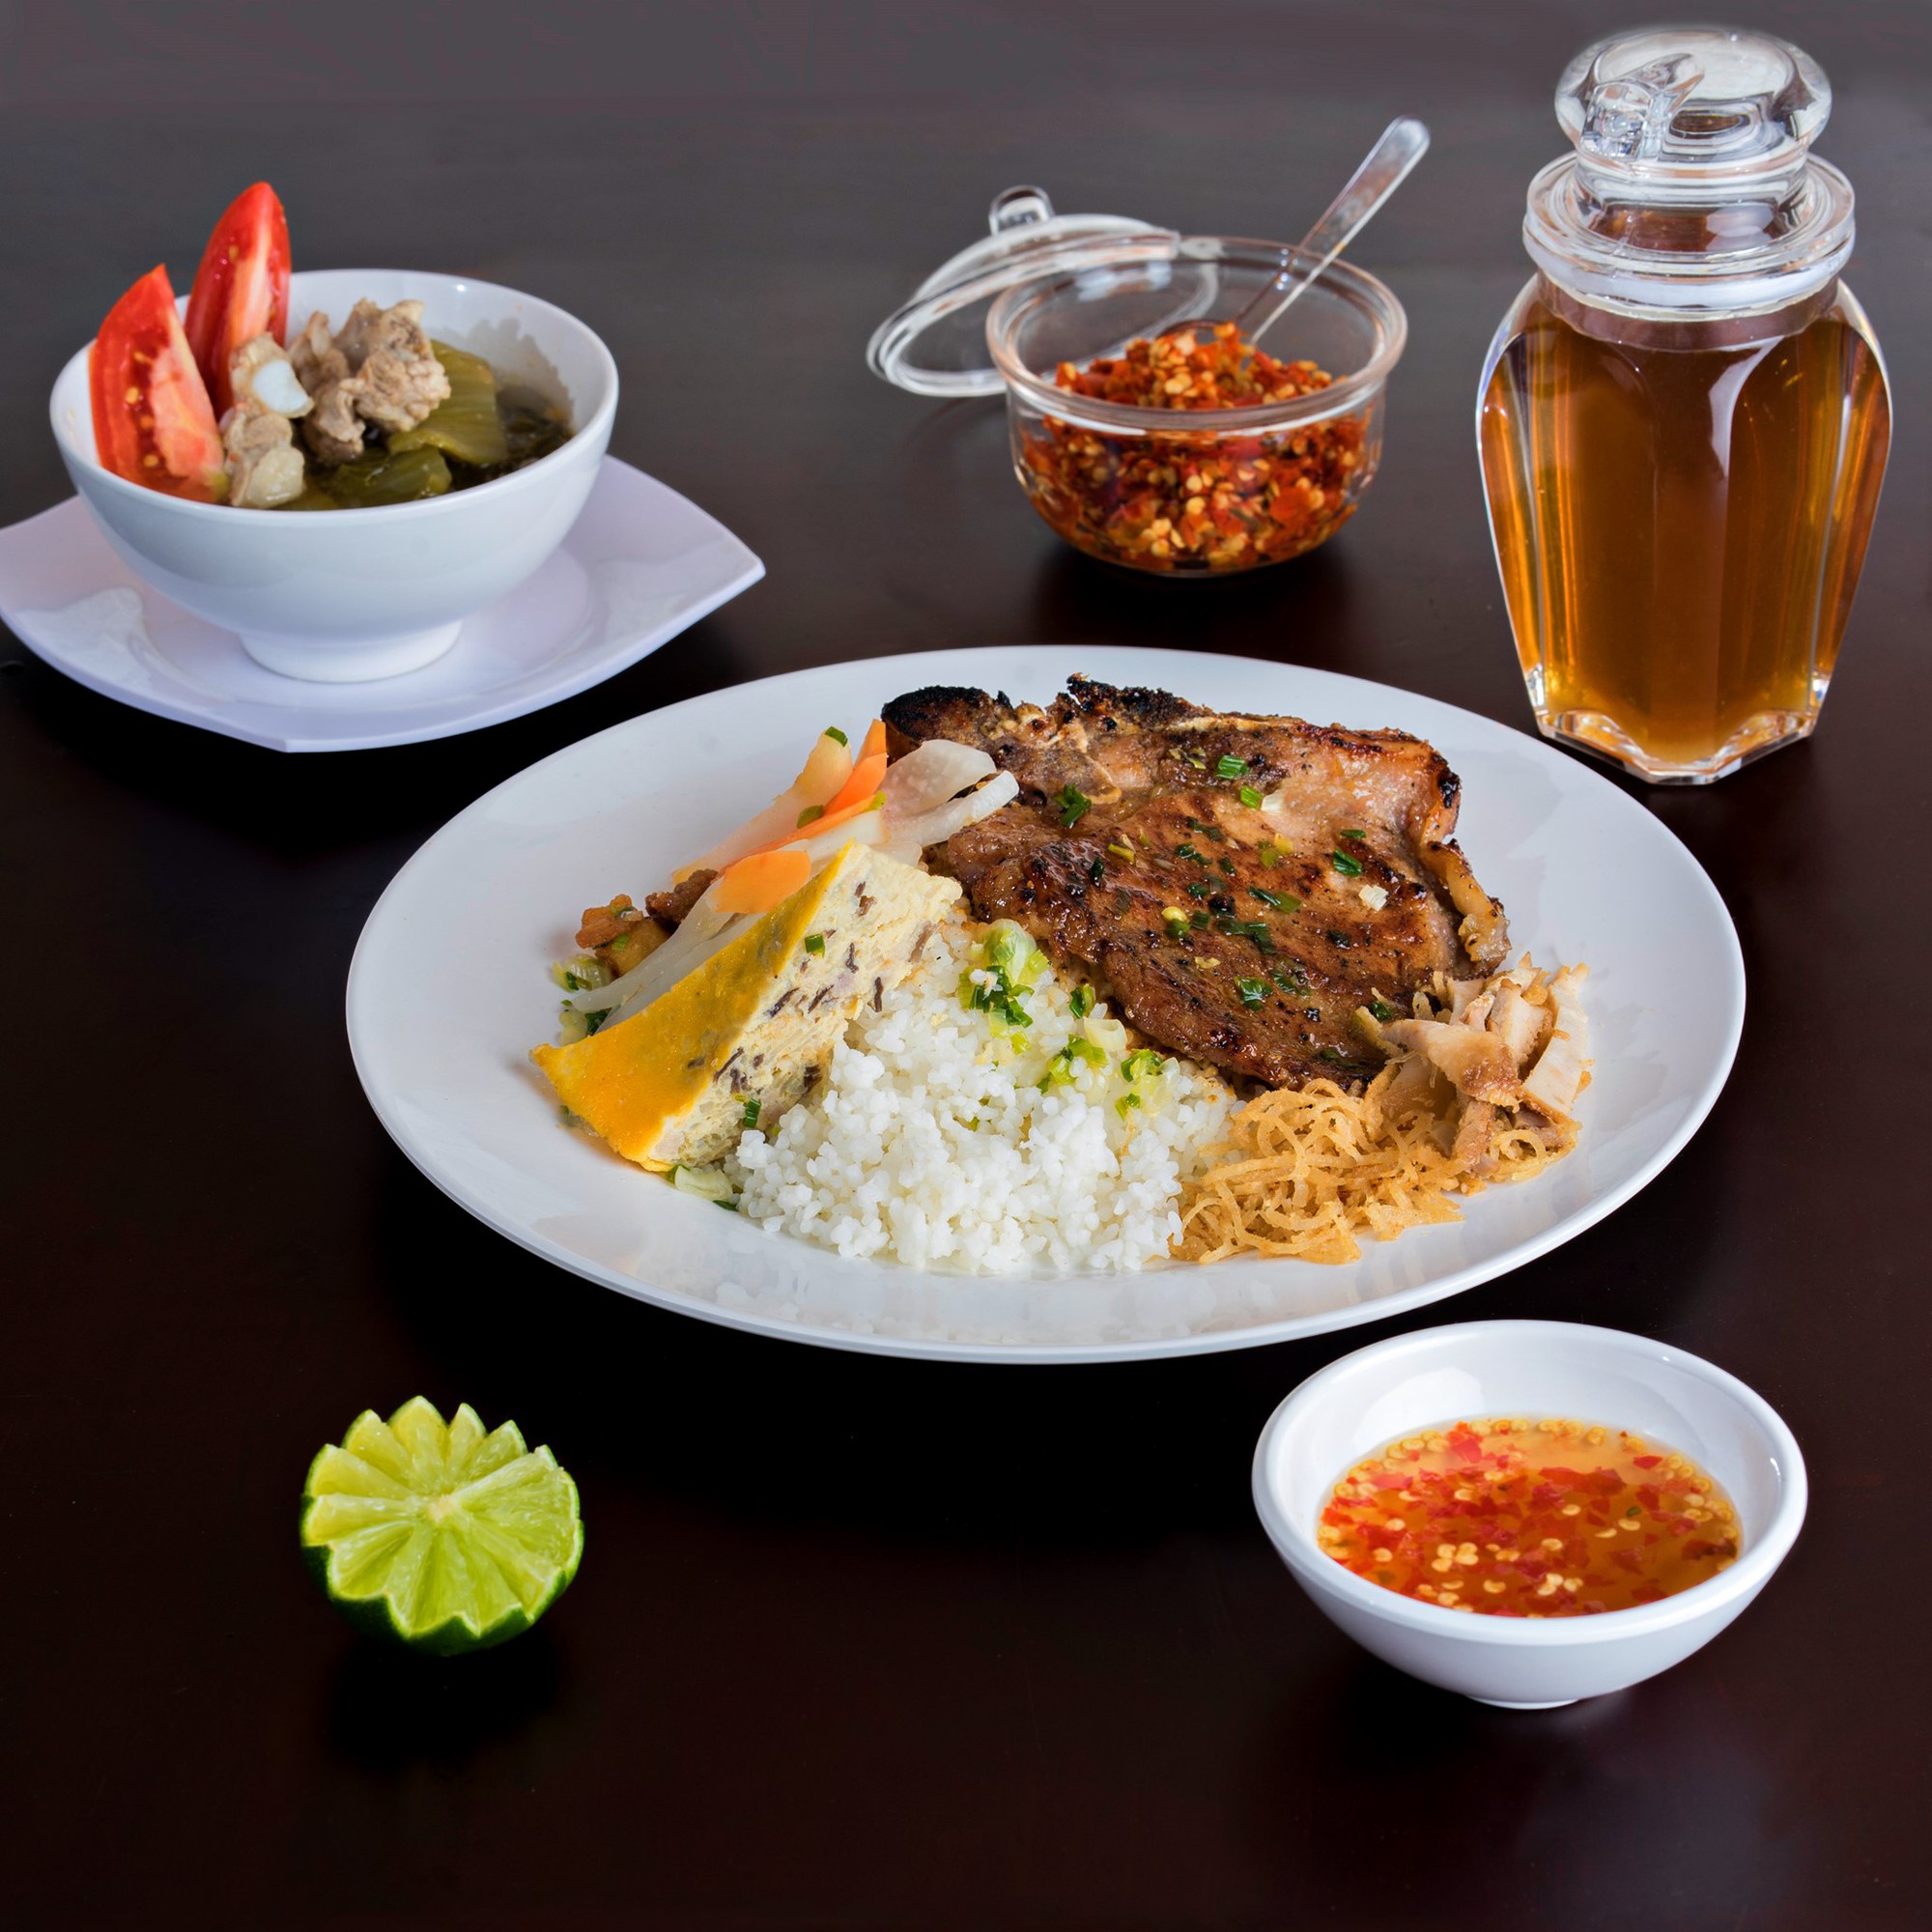 Cơm tấm Sài Gòn: Biểu tượng giao thoa văn hóa ẩm thực giữa phương Đông và phương Tây - ảnh 2